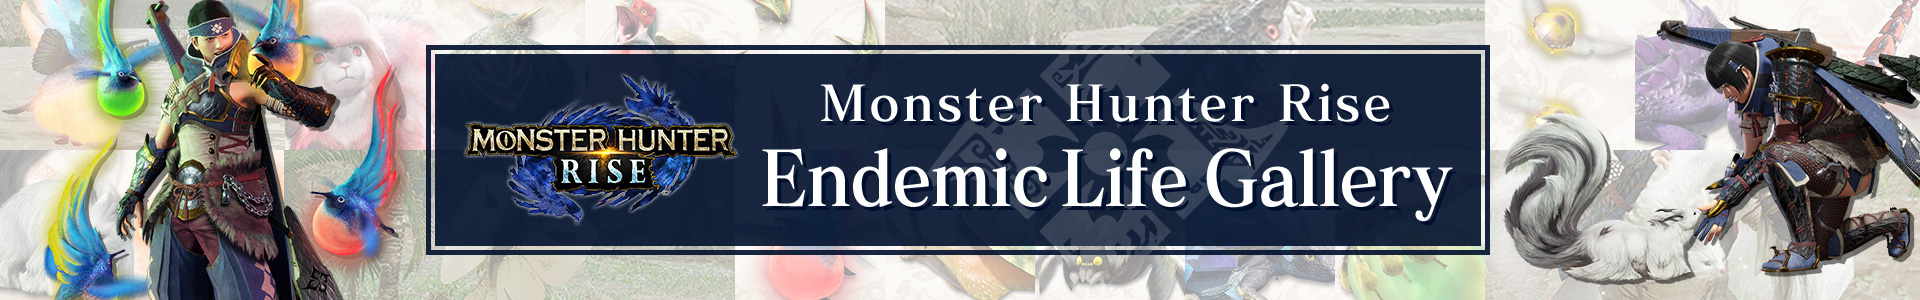 Monster Hunter Rise Endemic Life Gallery